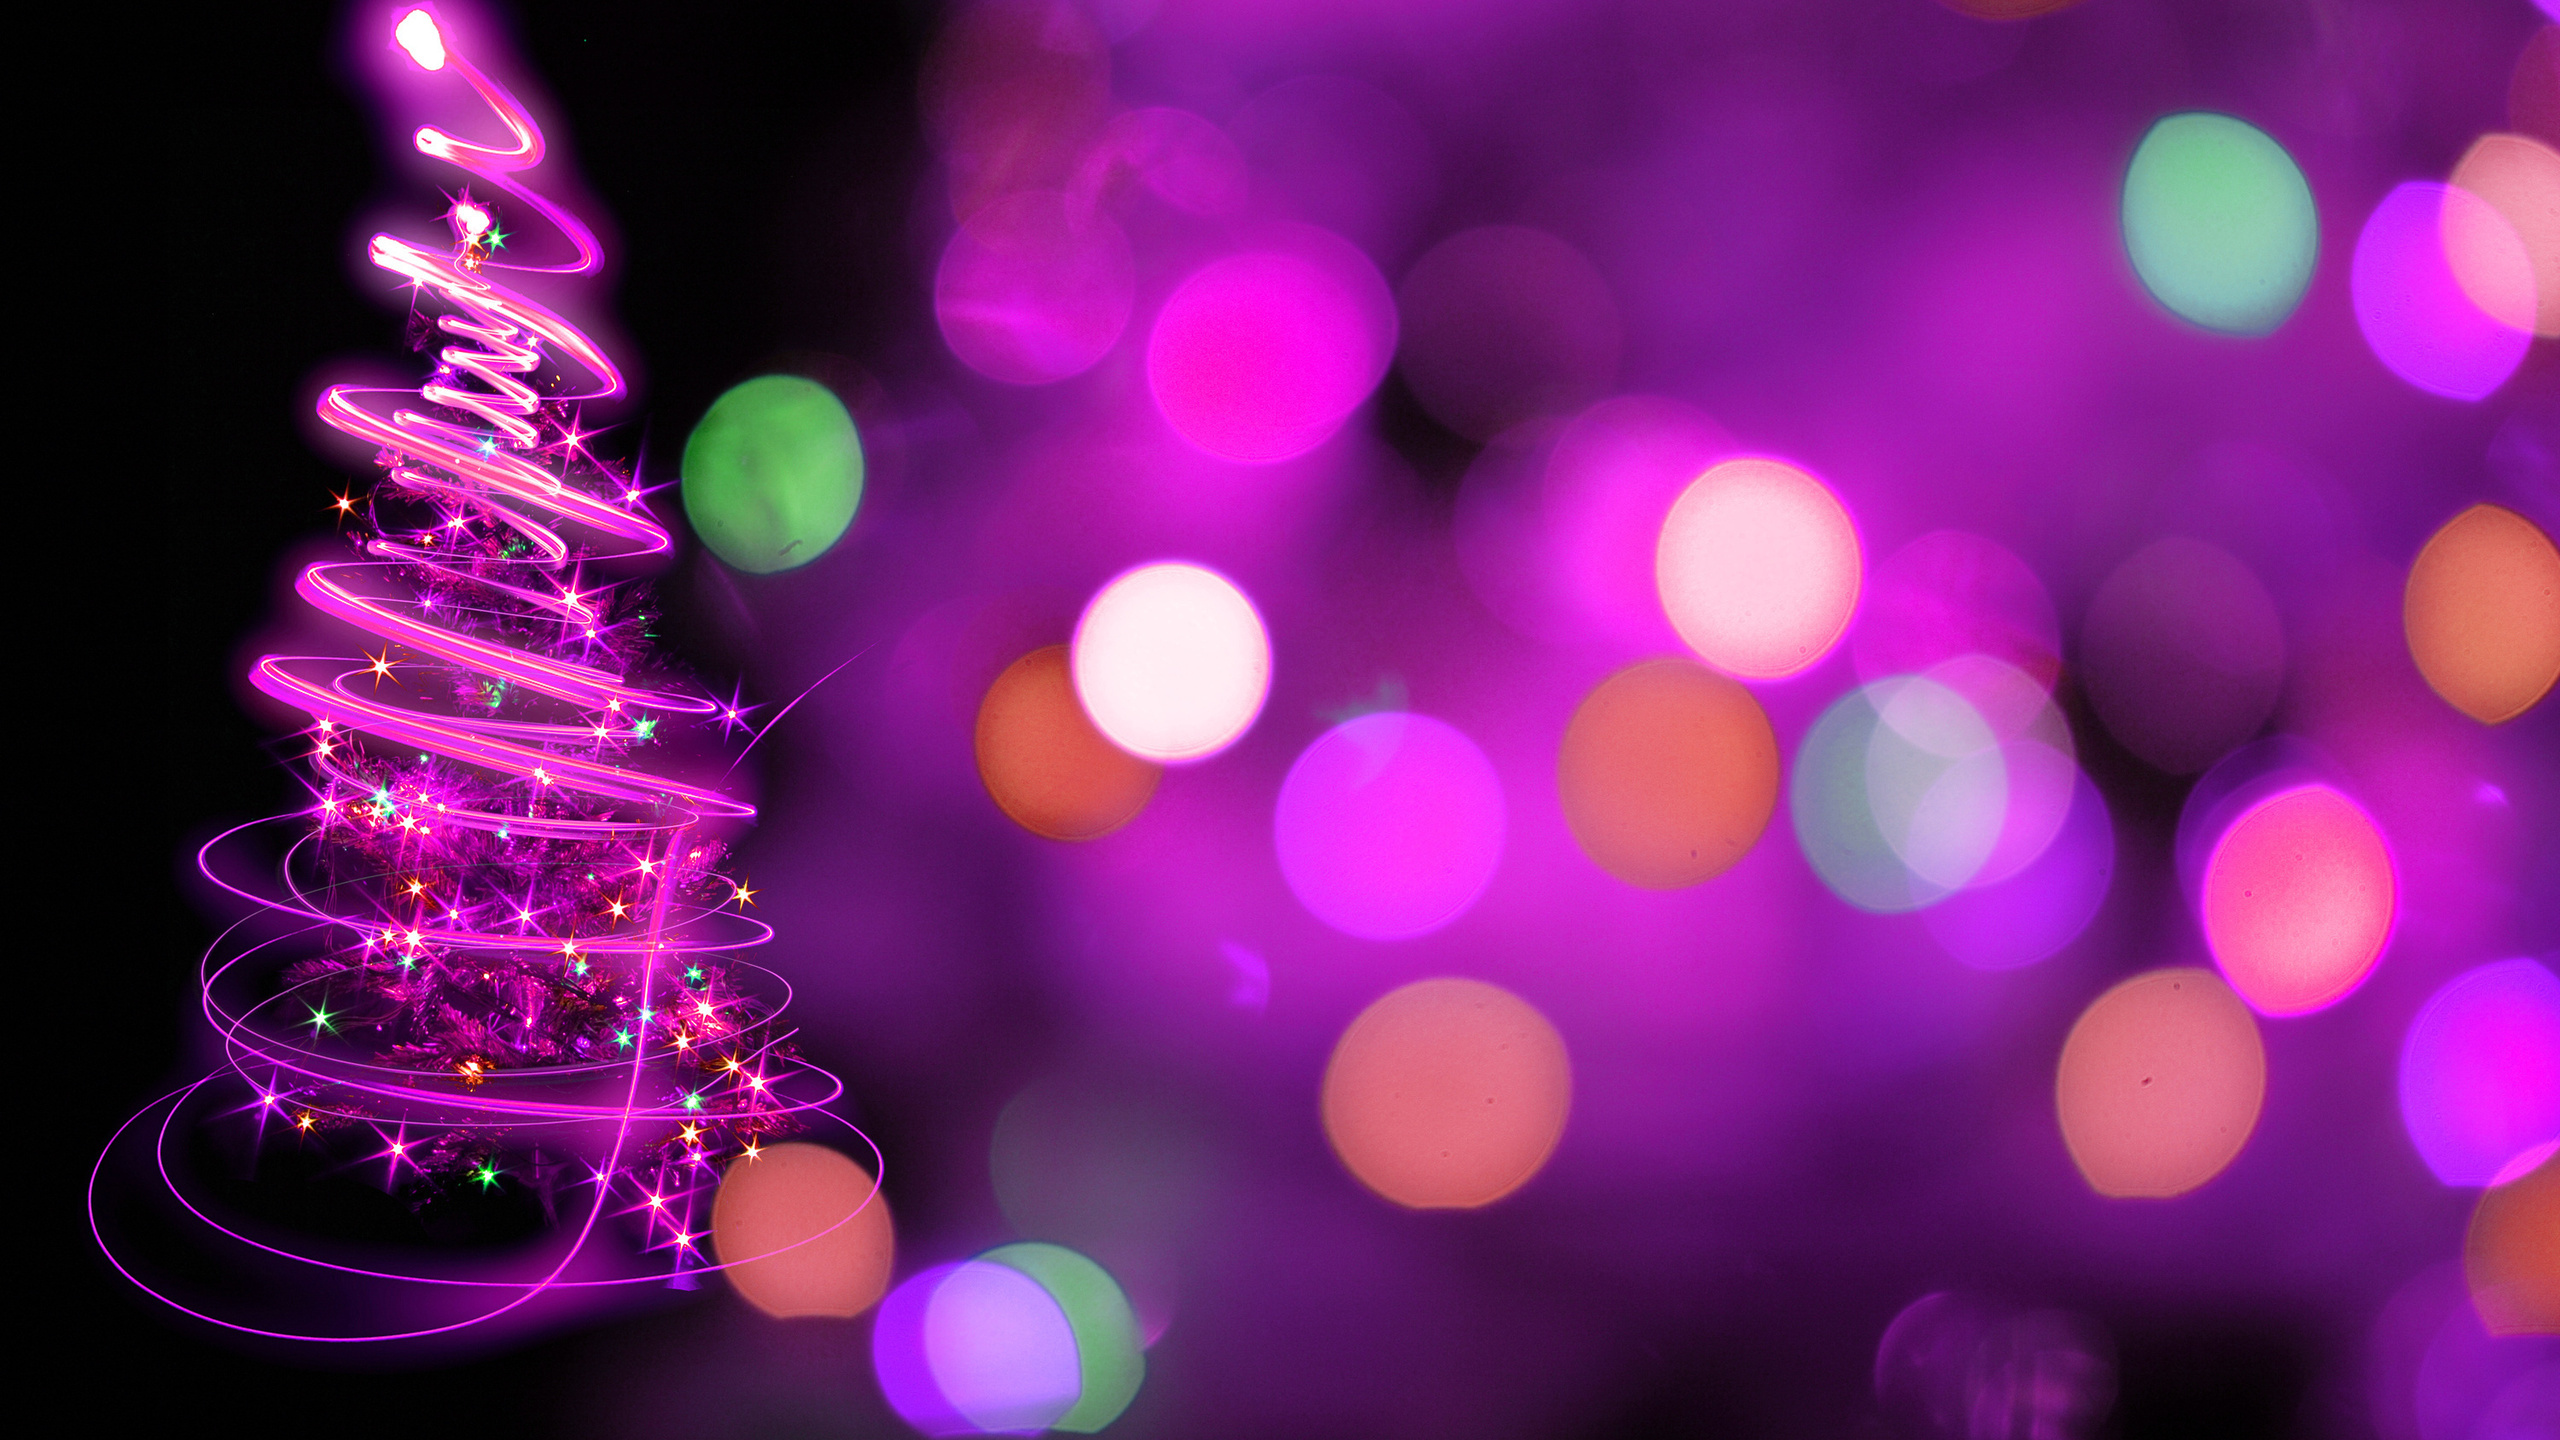 Le Jour De Noël, Arbre de Noël, Purple, Violette, Décoration de Noël. Wallpaper in 2560x1440 Resolution